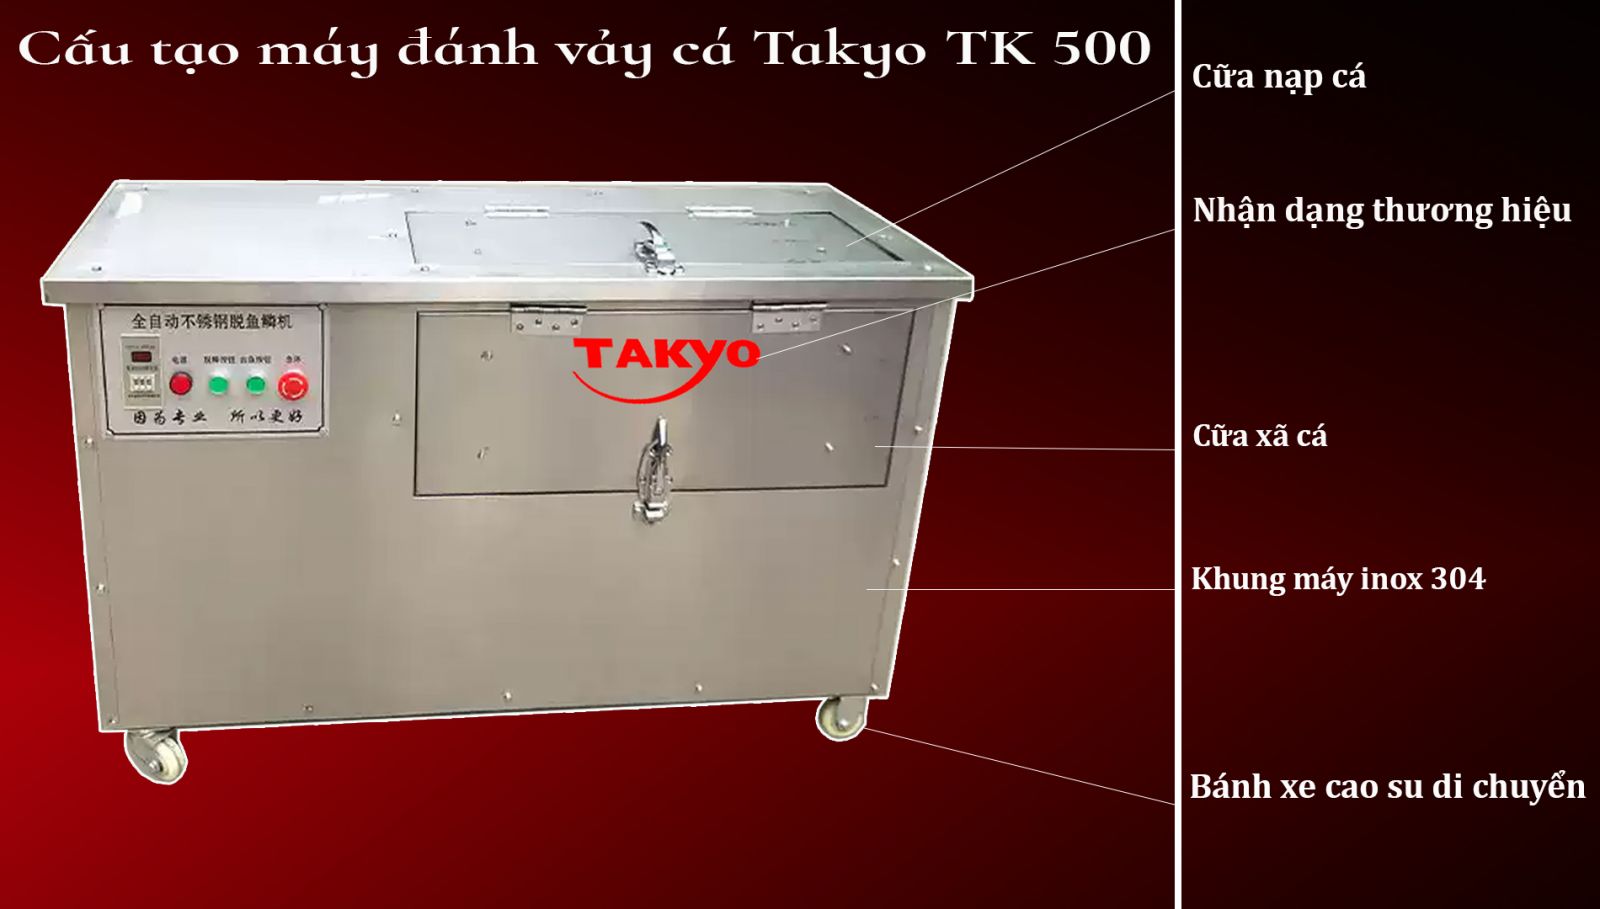 Cấu tạo máy đahs vảy cá Takyo TK 500